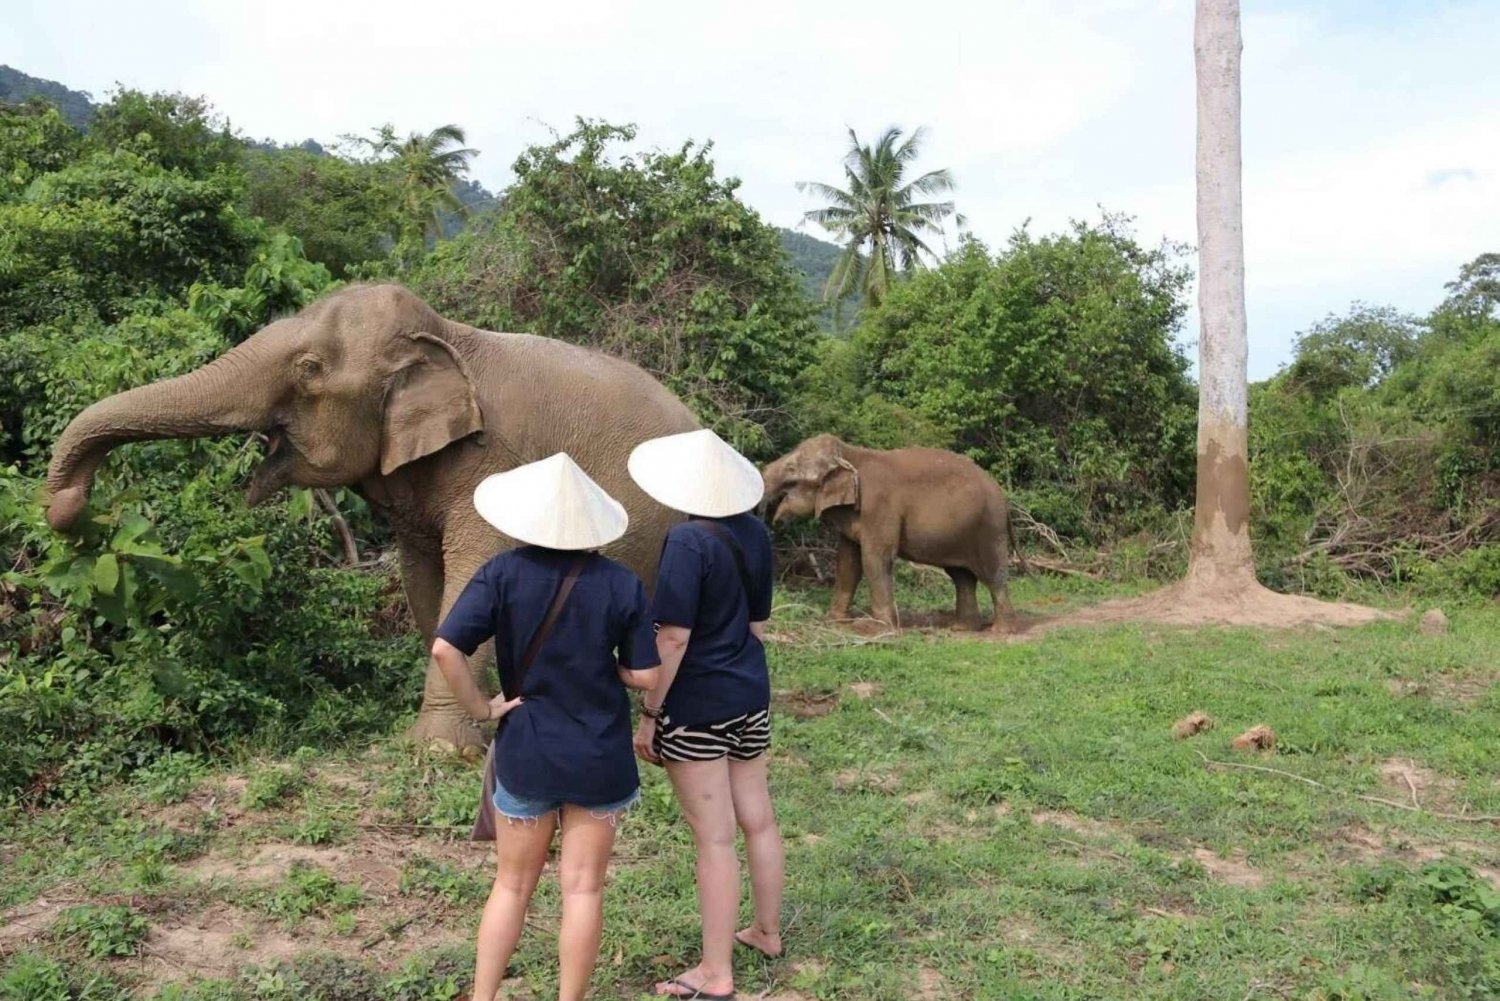 Koh Samui: Elefanten-Schutzgebiet und mehr - Ganzer Tag